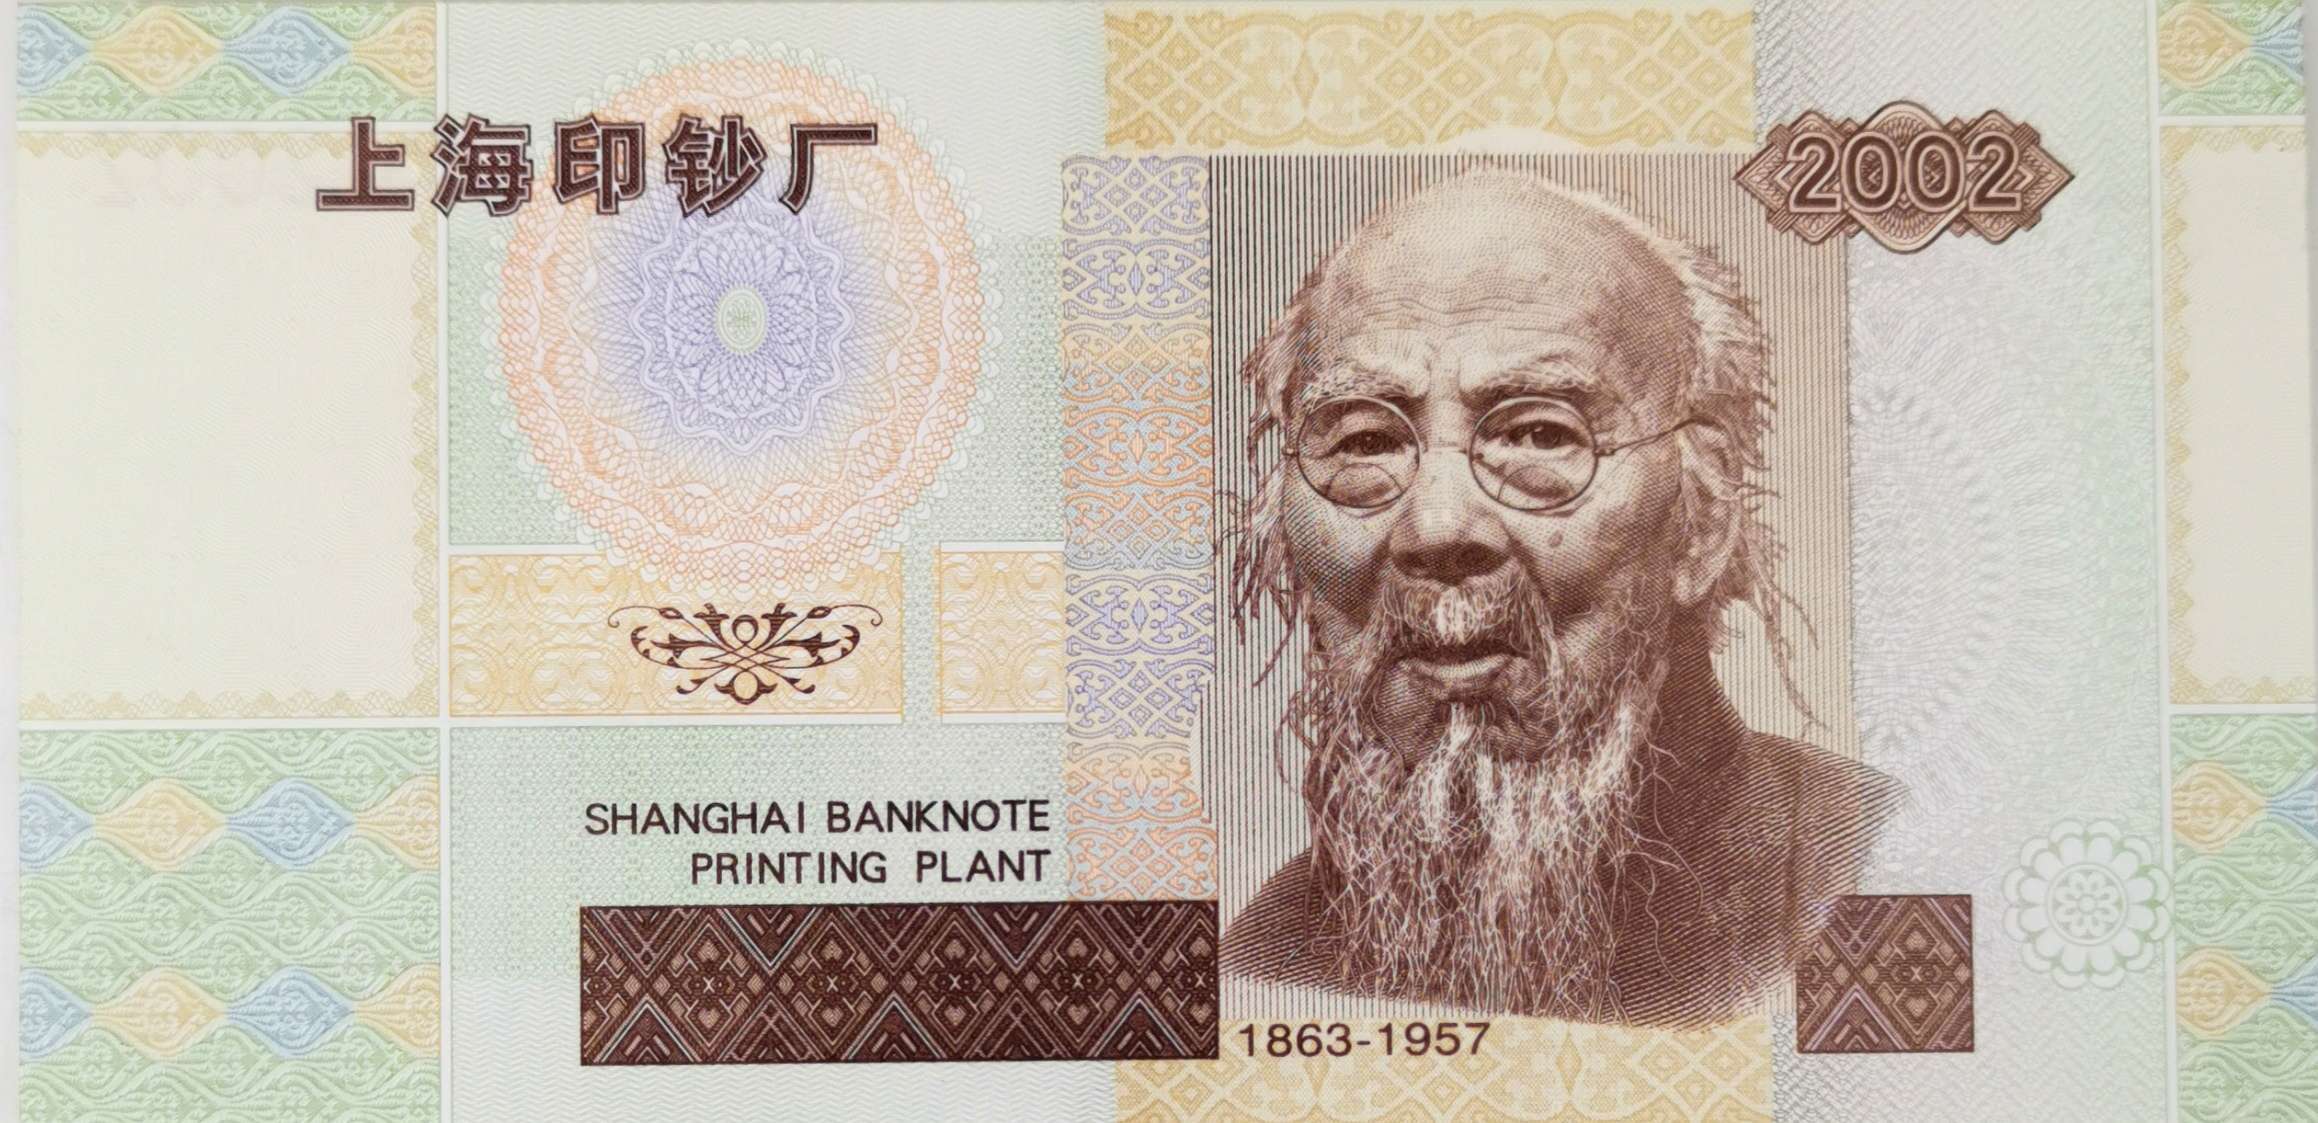 第五套人民币印钞机试验版印样齐白石成为中国印钞造币艺术形象大使